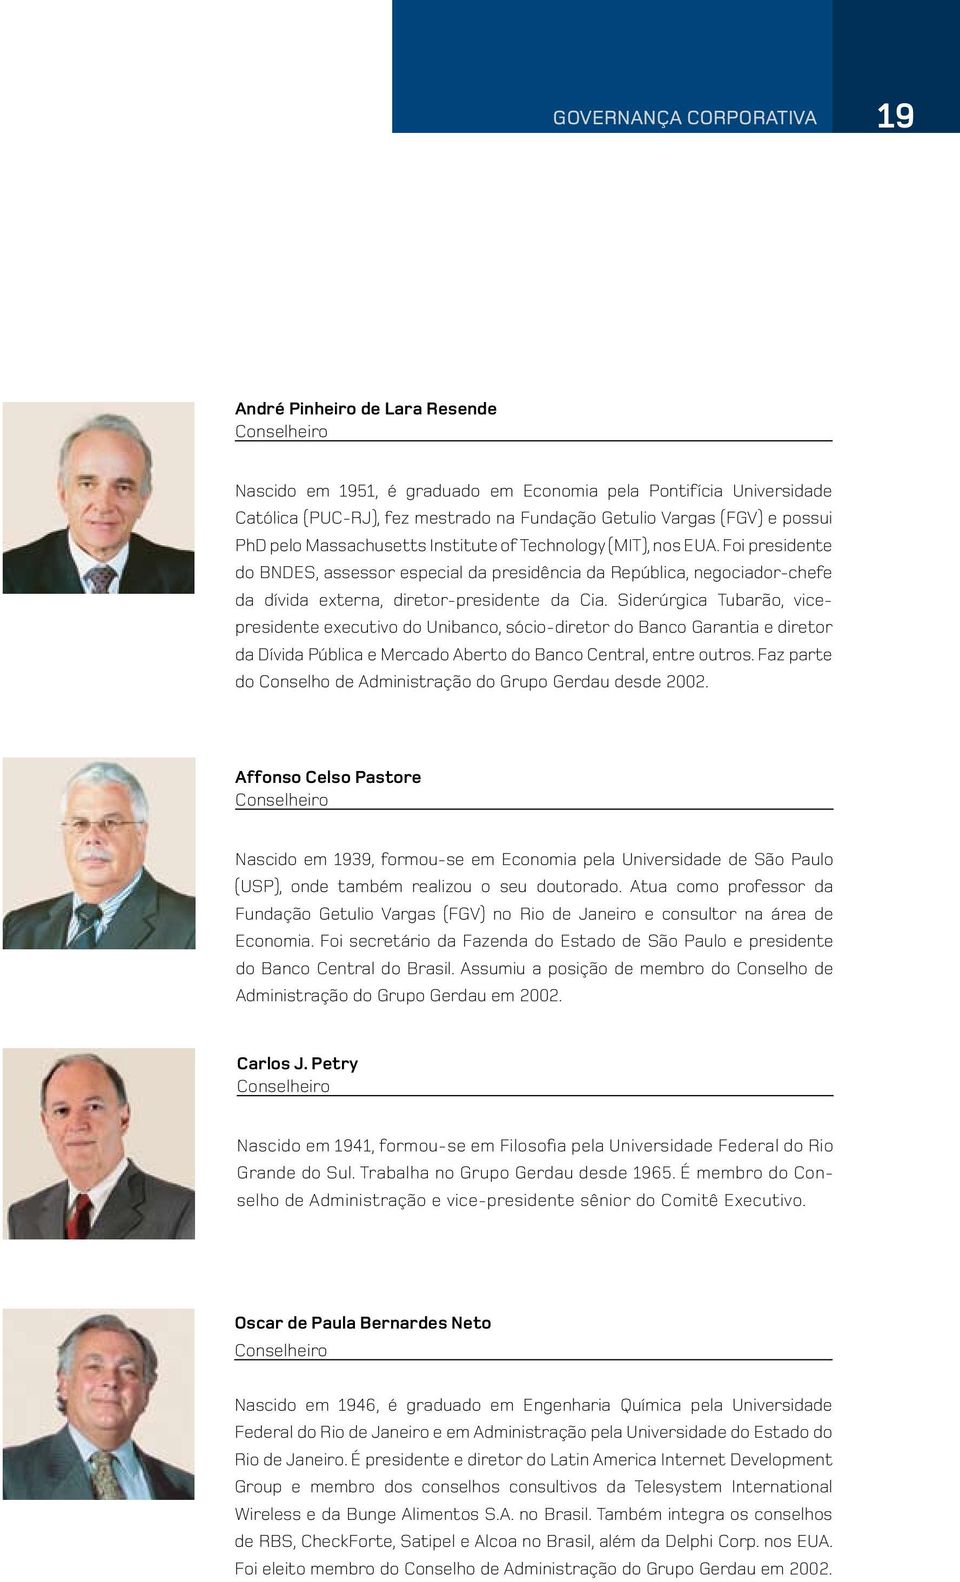 Siderúrgica Tubarão, vicepresidente executivo do Unibanco, sócio-diretor do Banco Garantia e diretor da Dívida Pública e Mercado Aberto do Banco Central, entre outros.